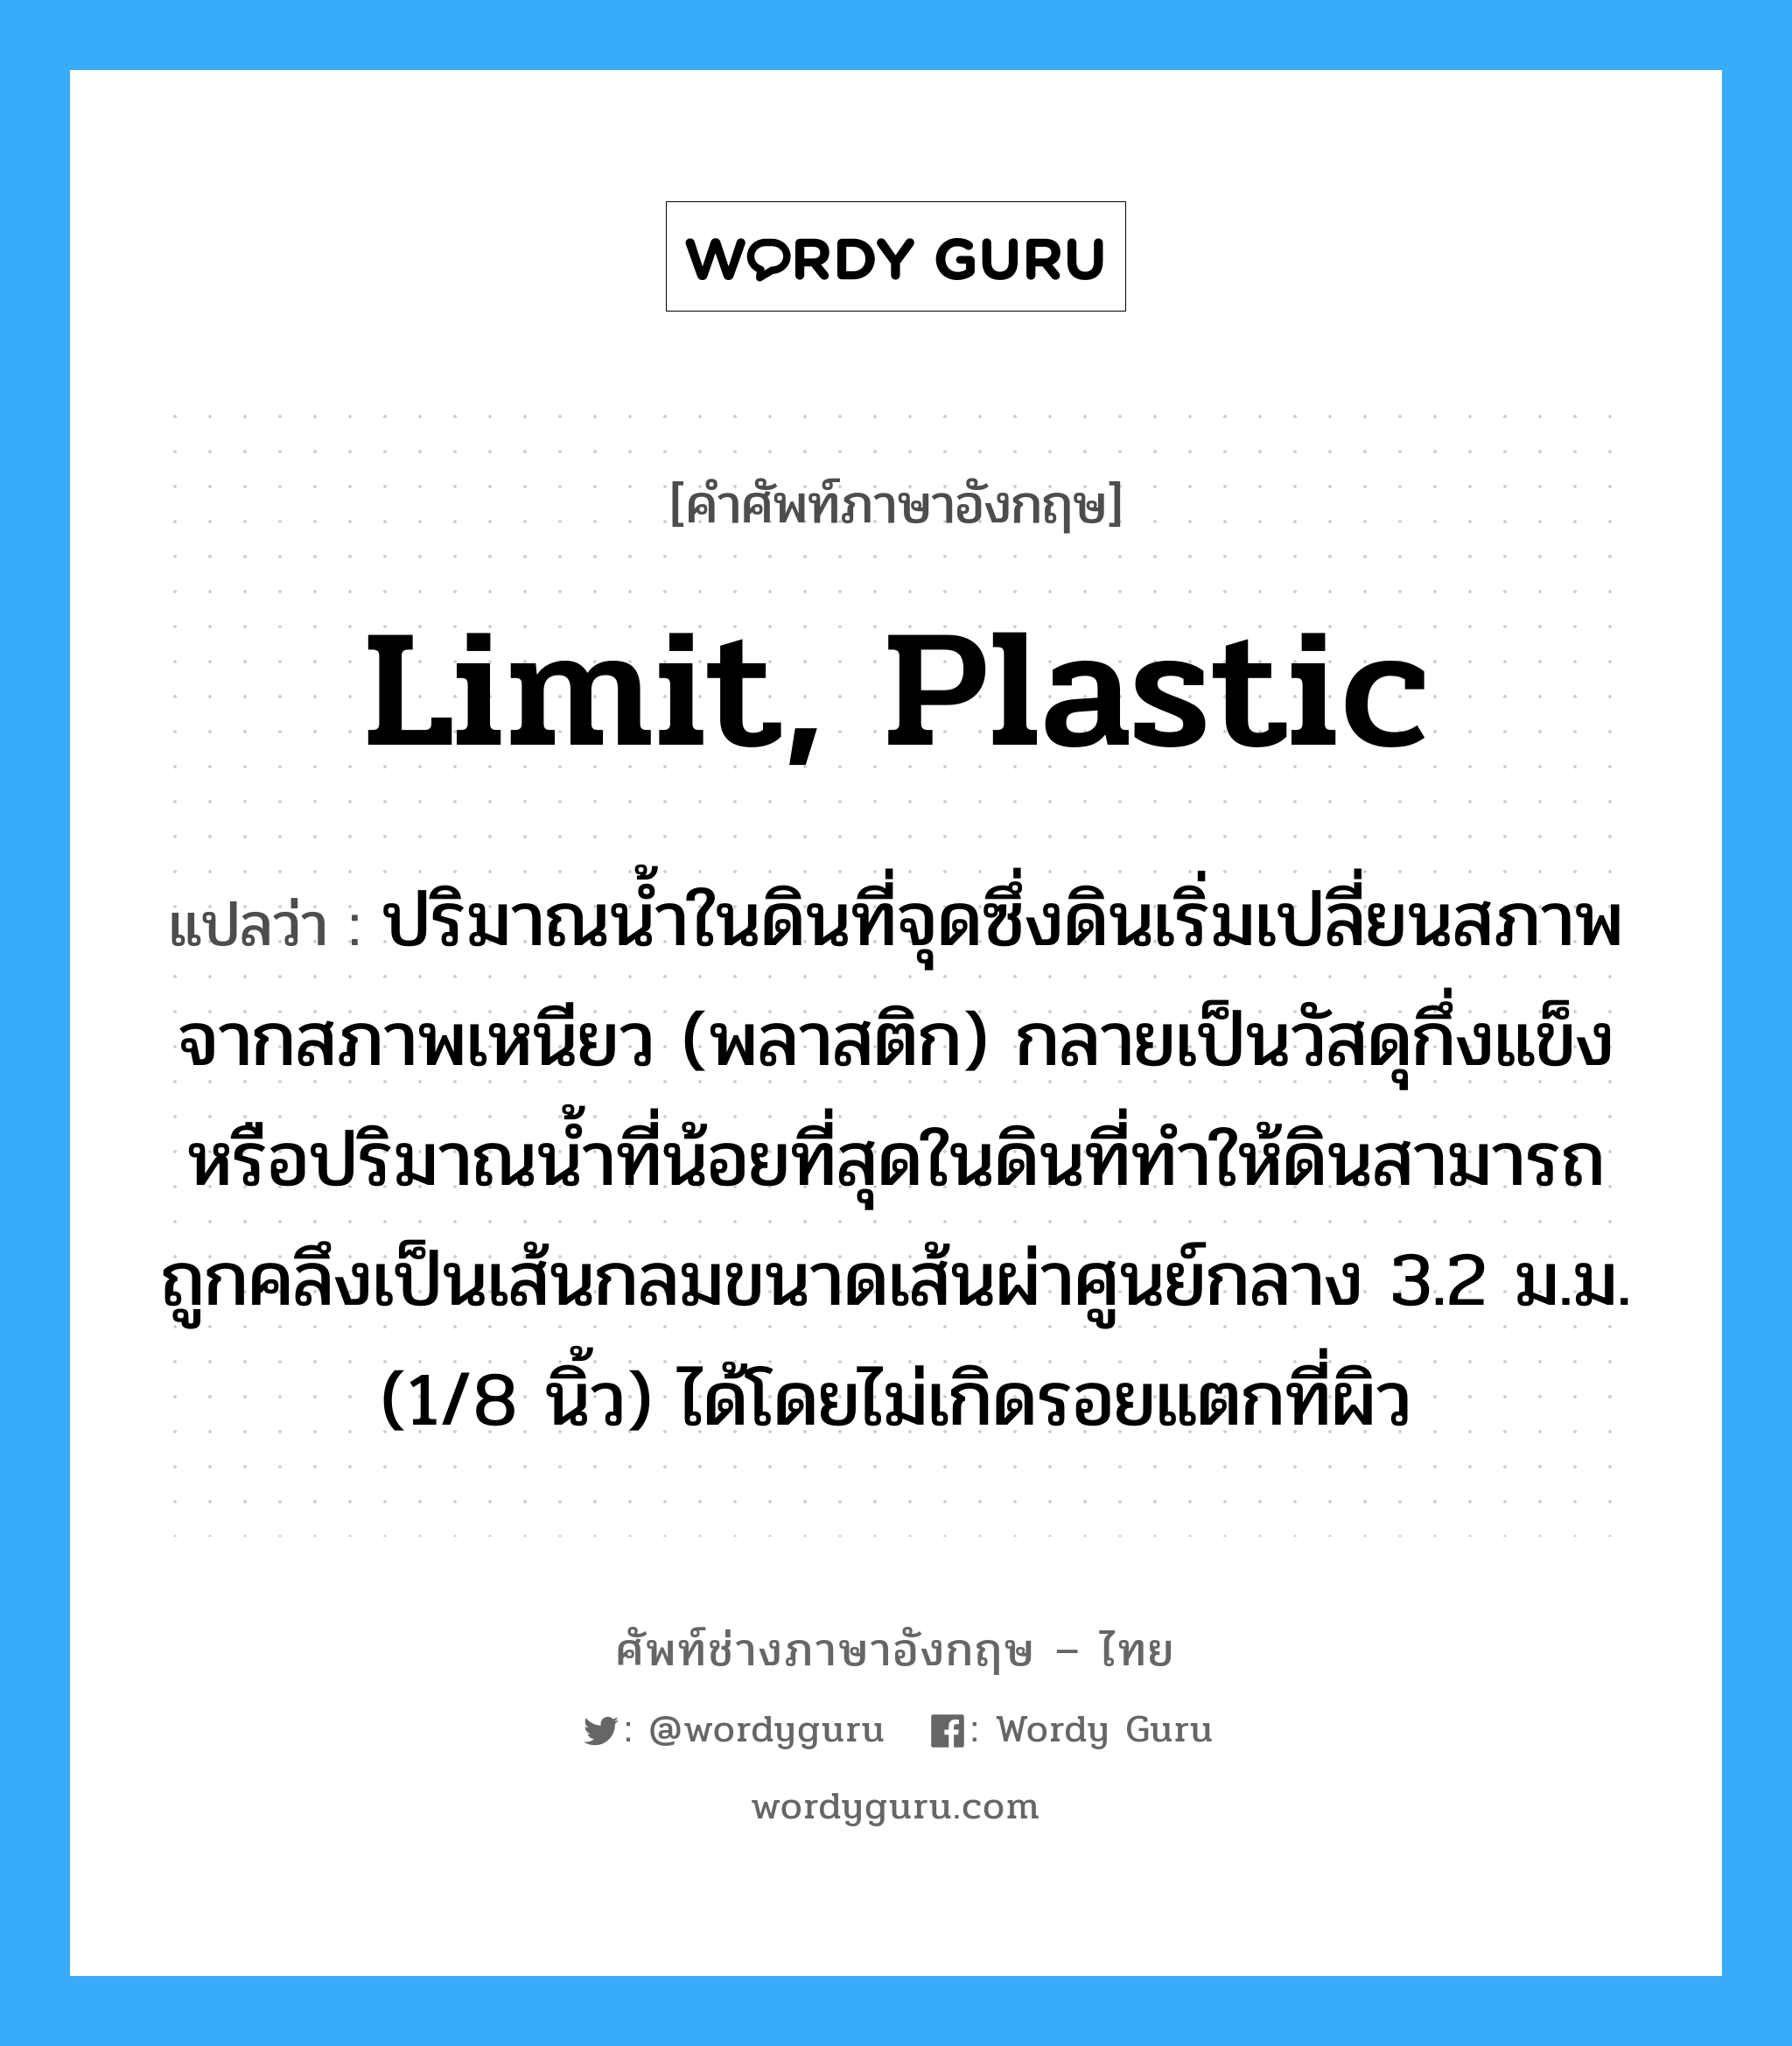 limit, plastic แปลว่า?, คำศัพท์ช่างภาษาอังกฤษ - ไทย limit, plastic คำศัพท์ภาษาอังกฤษ limit, plastic แปลว่า ปริมาณน้ำในดินที่จุดซึ่งดินเริ่มเปลี่ยนสภาพจากสภาพเหนียว (พลาสติก) กลายเป็นวัสดุกึ่งแข็งหรือปริมาณน้ำที่น้อยที่สุดในดินที่ทำให้ดินสามารถถูกคลึงเป็นเส้นกลมขนาดเส้นผ่าศูนย์กลาง 3.2 ม.ม. (1/8 นิ้ว) ได้โดยไม่เกิดรอยแตกที่ผิว